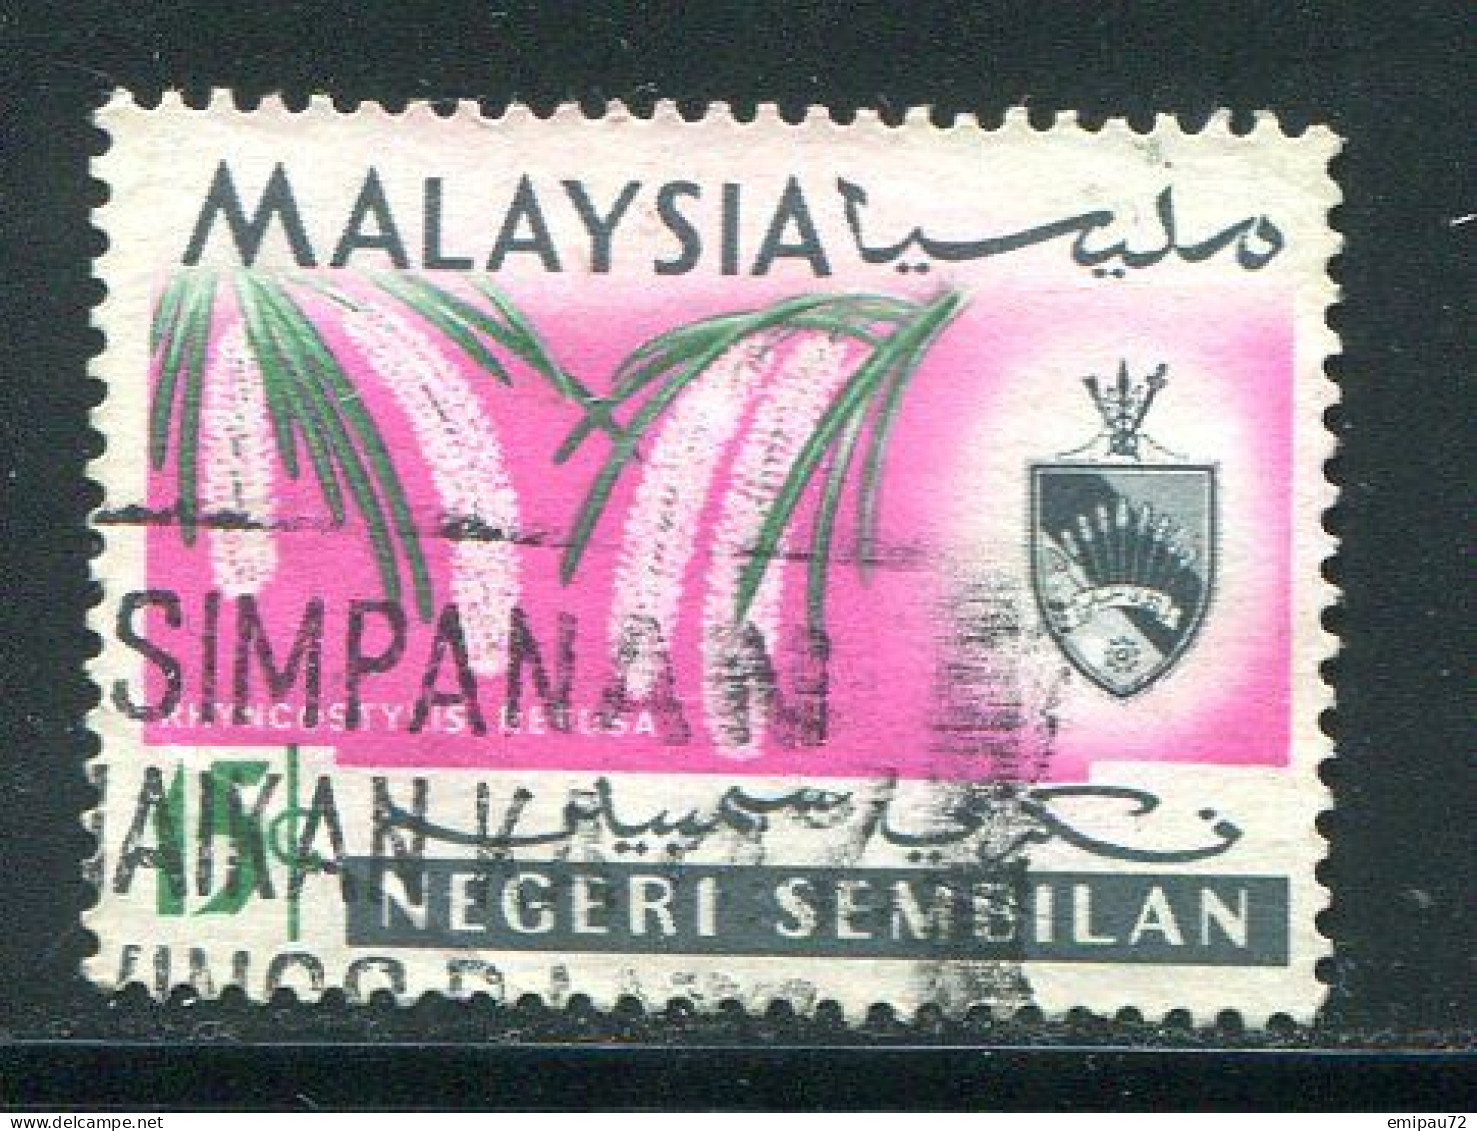 NEGRI SEMBILAN- Y&T N°78- Oblitéré - Negri Sembilan